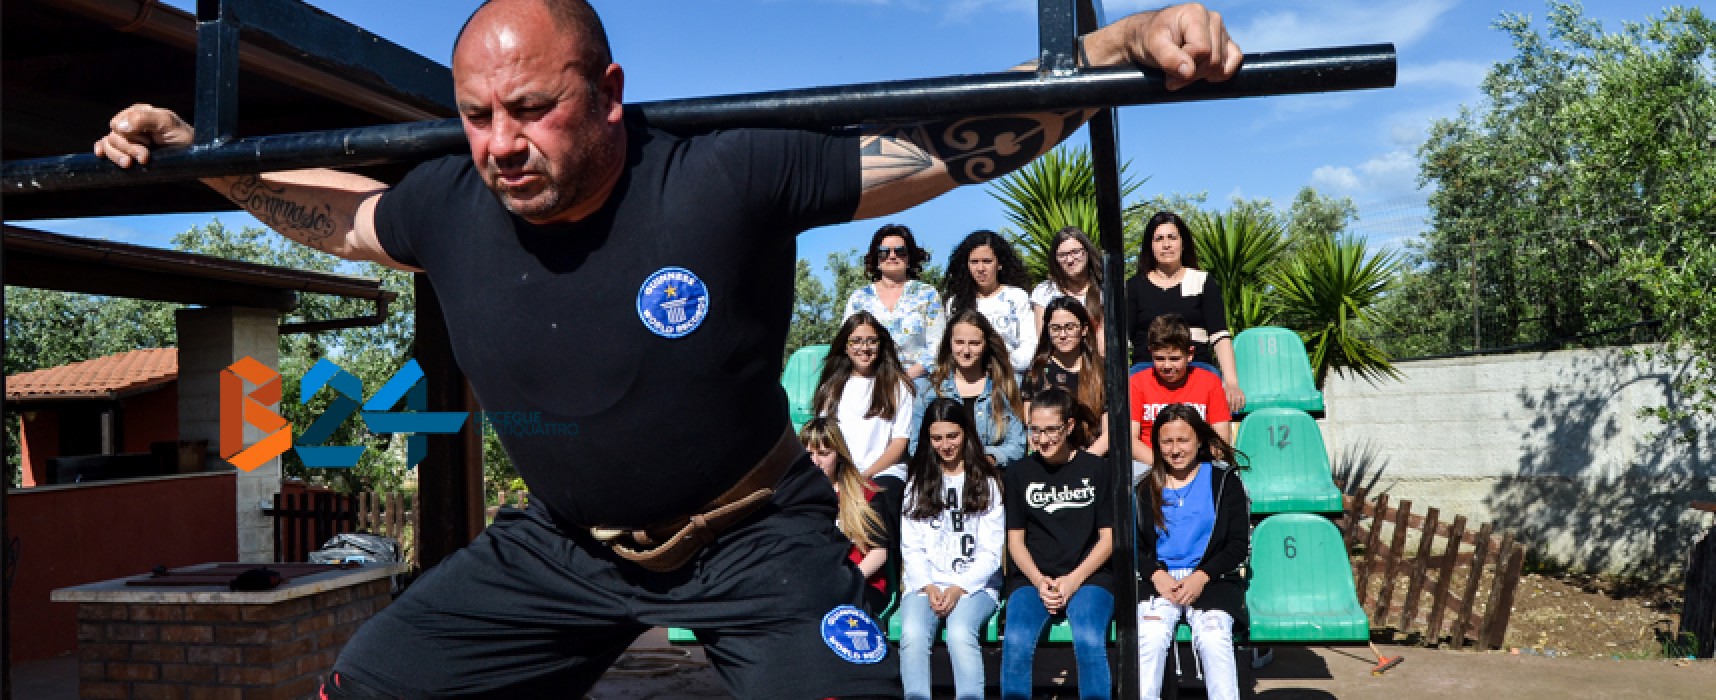 Dieci squat sollevando 12 ragazze: la sfida di Cosimo Ferrucci al Westing World Record